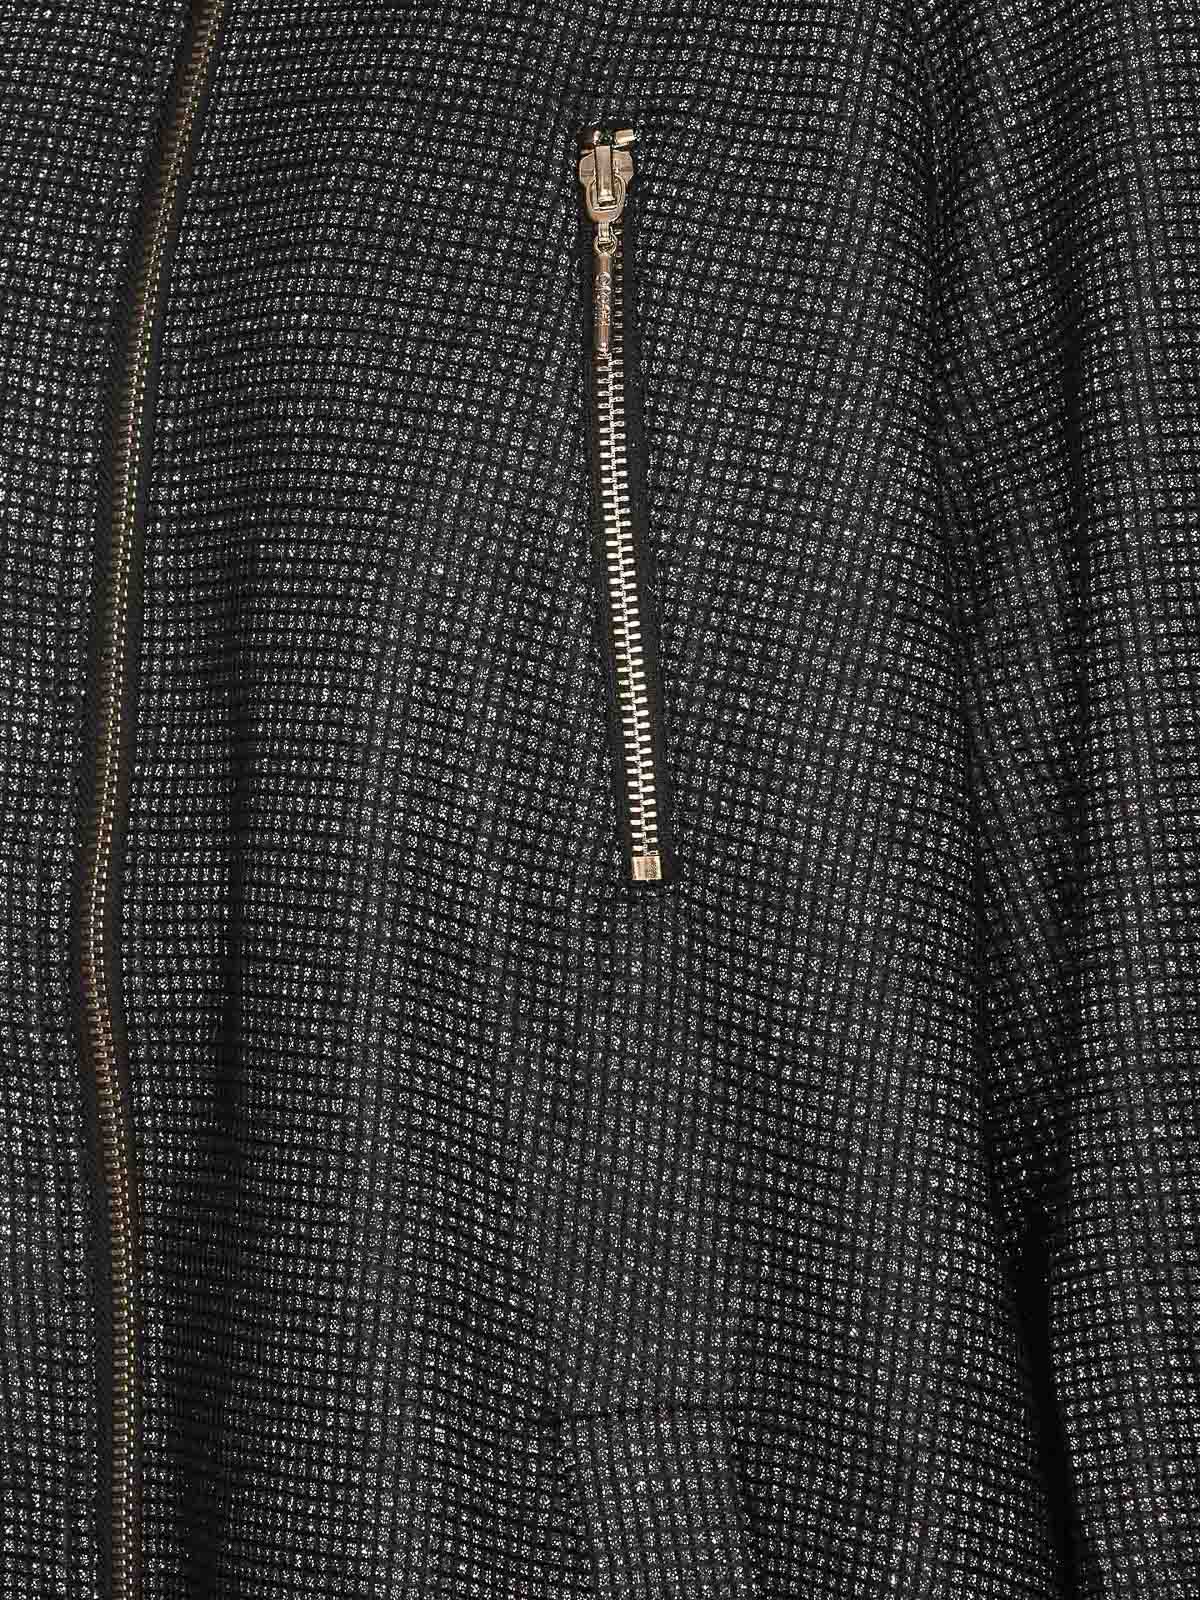 Shop Liu •jo Black Jacket With Zip Frontal Zip